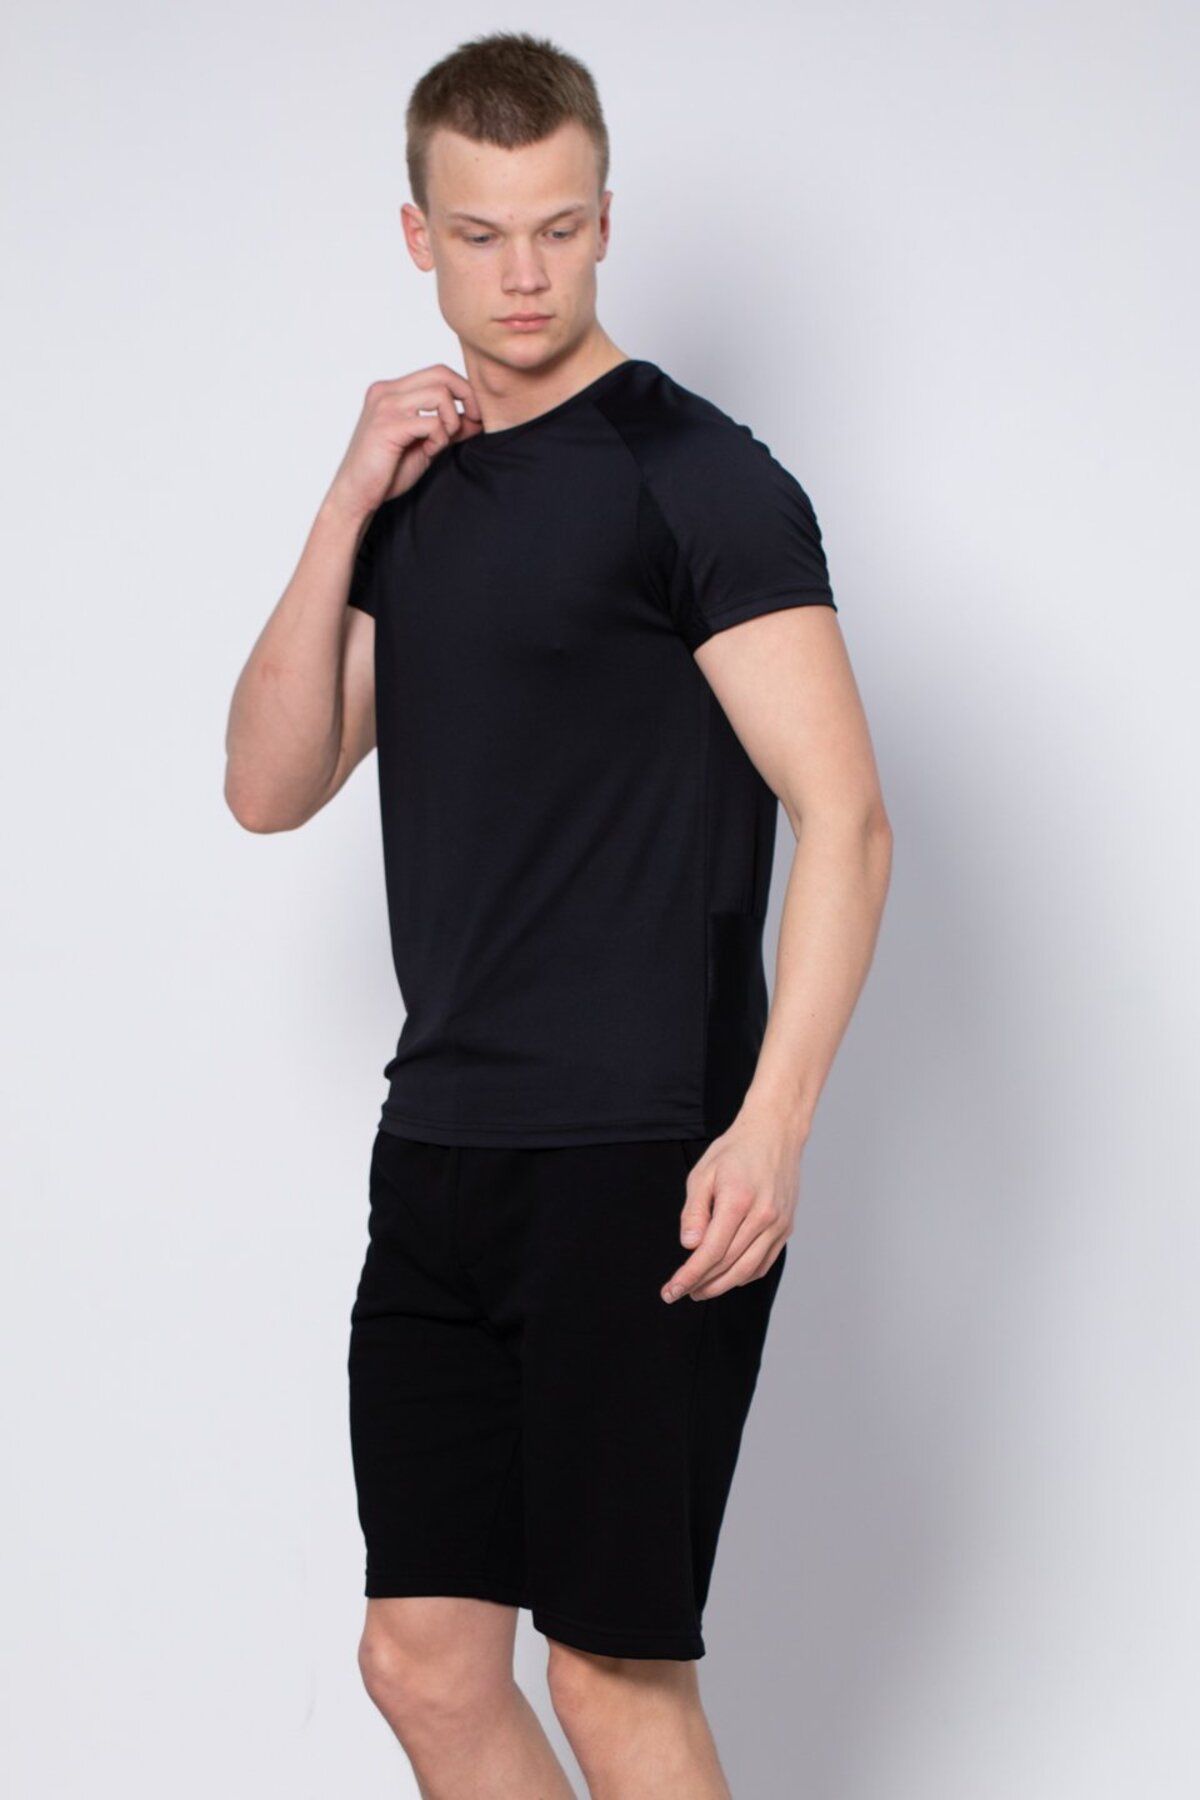 BARRELS AND OIL Premium Baskılı Sporcu T-Shirt - Siyah